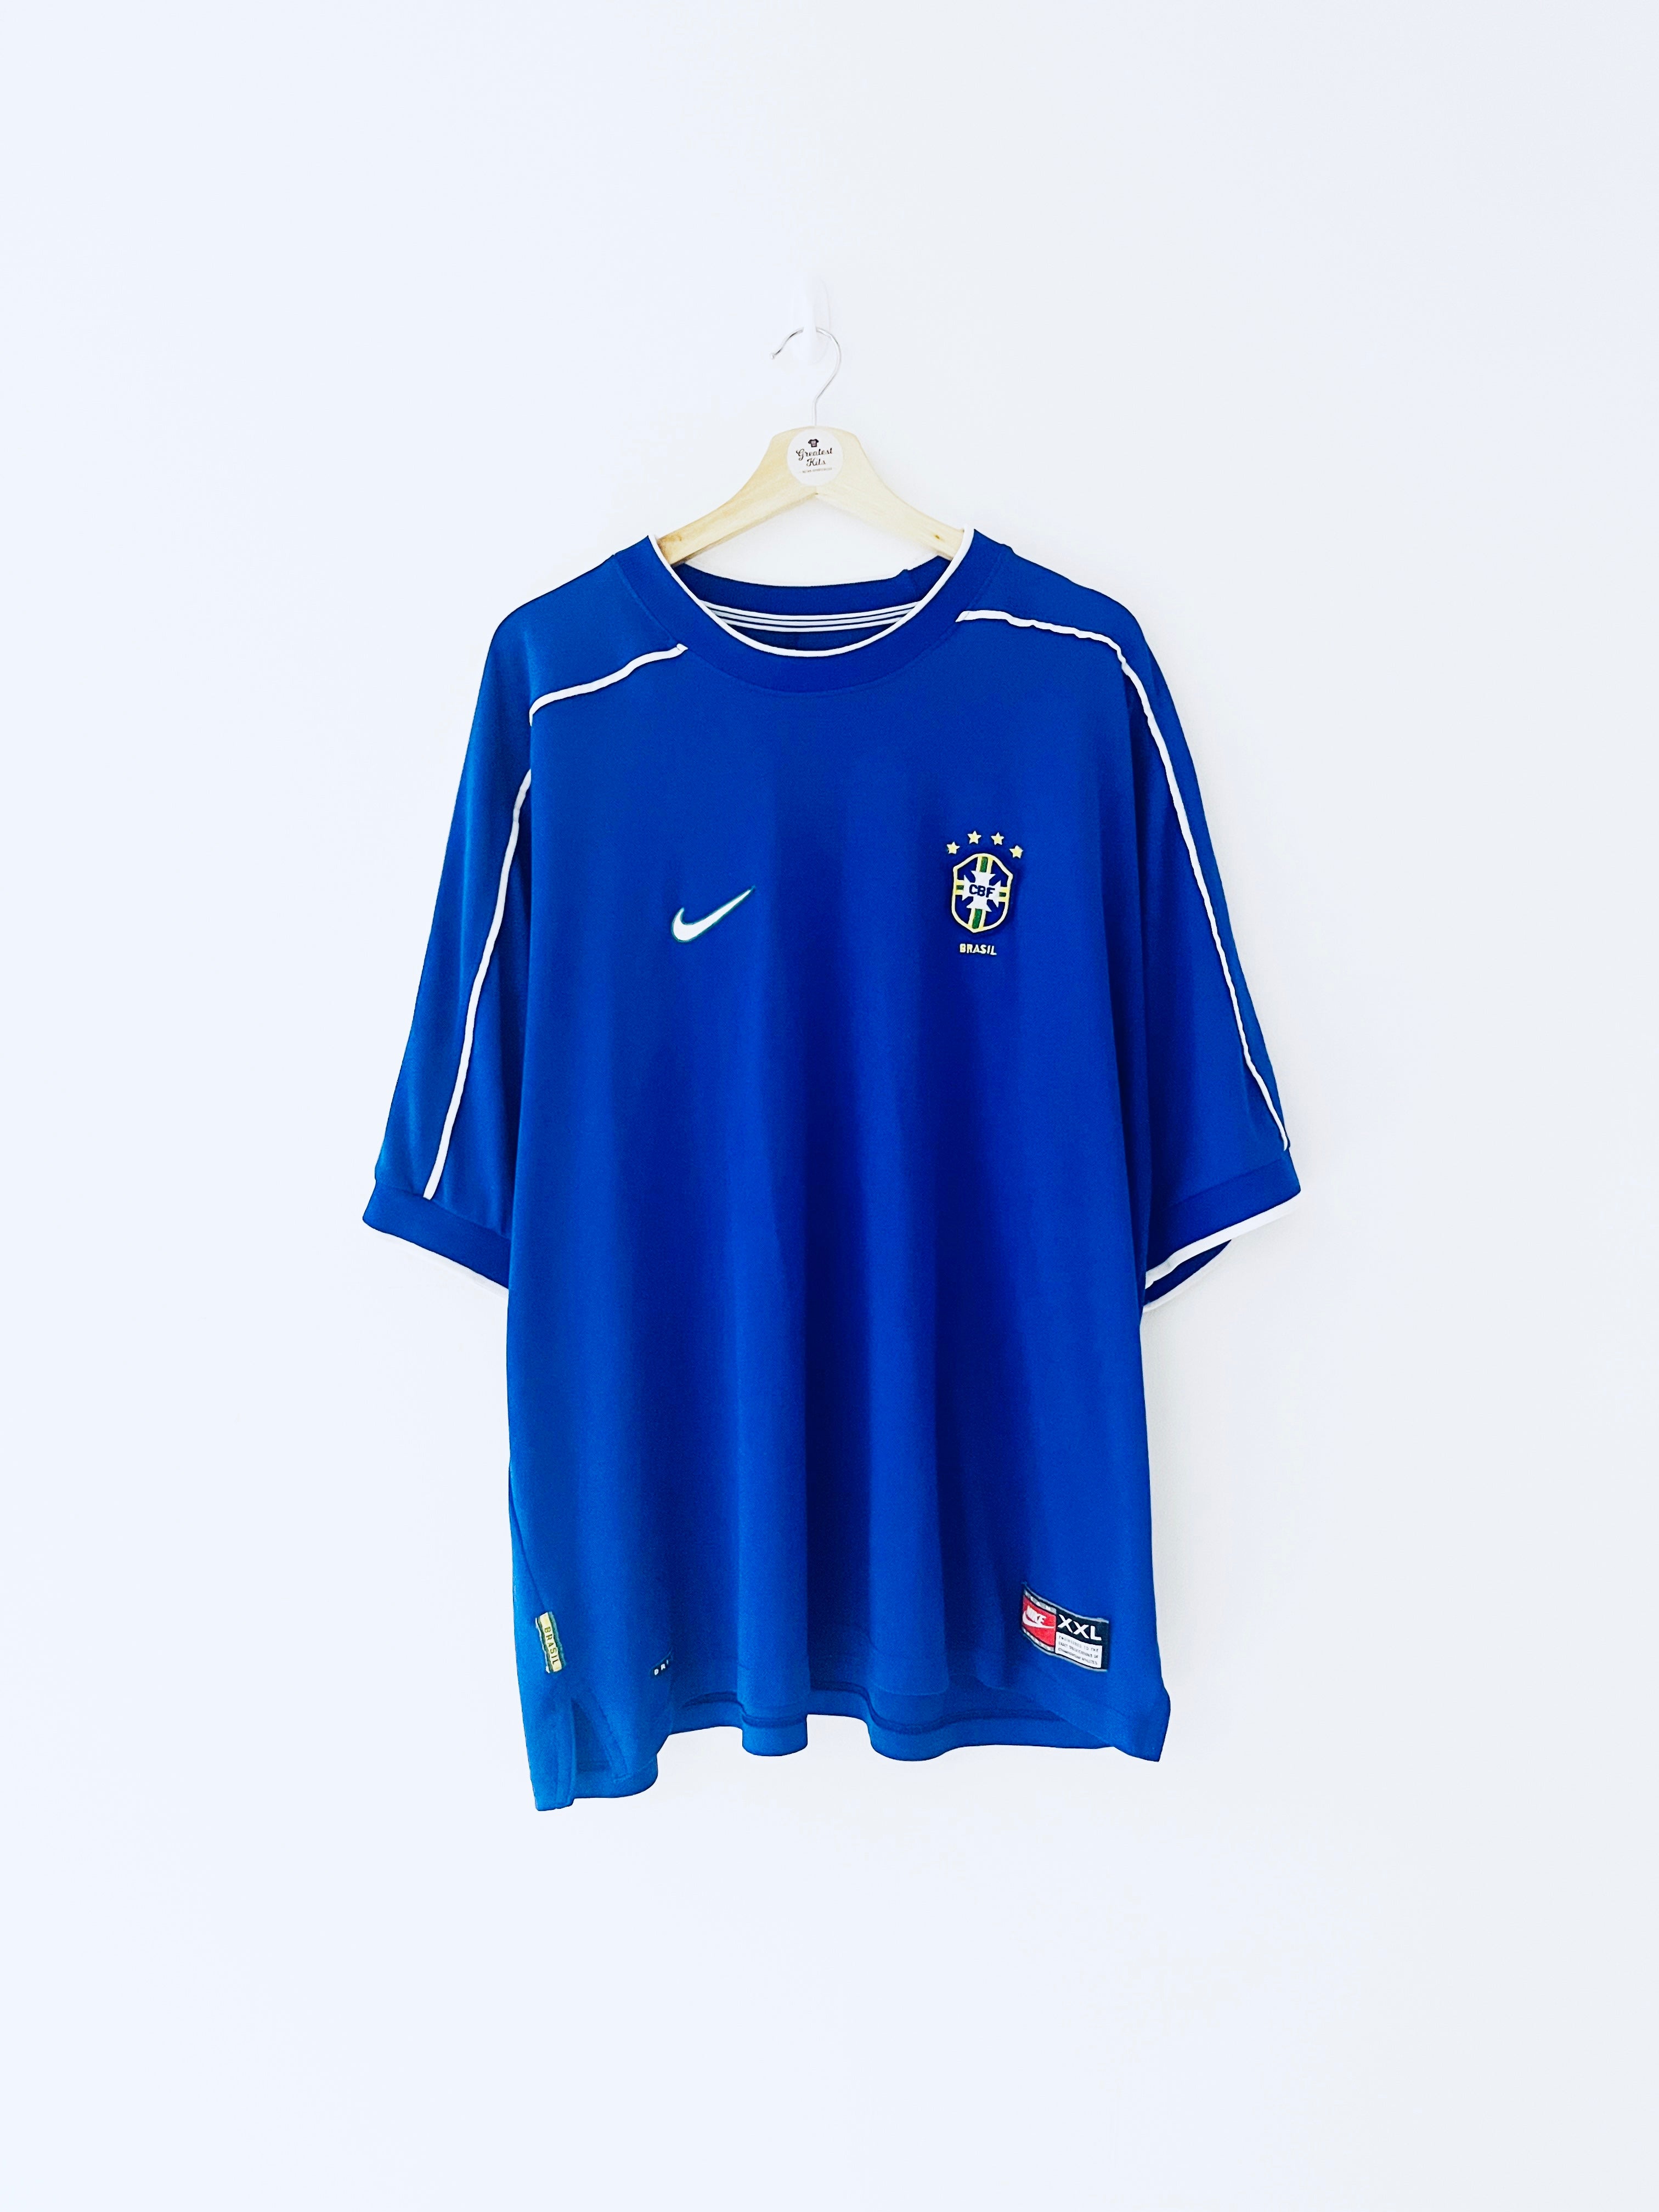 1998/00 Brazil Away Shirt (XXL) 9/10